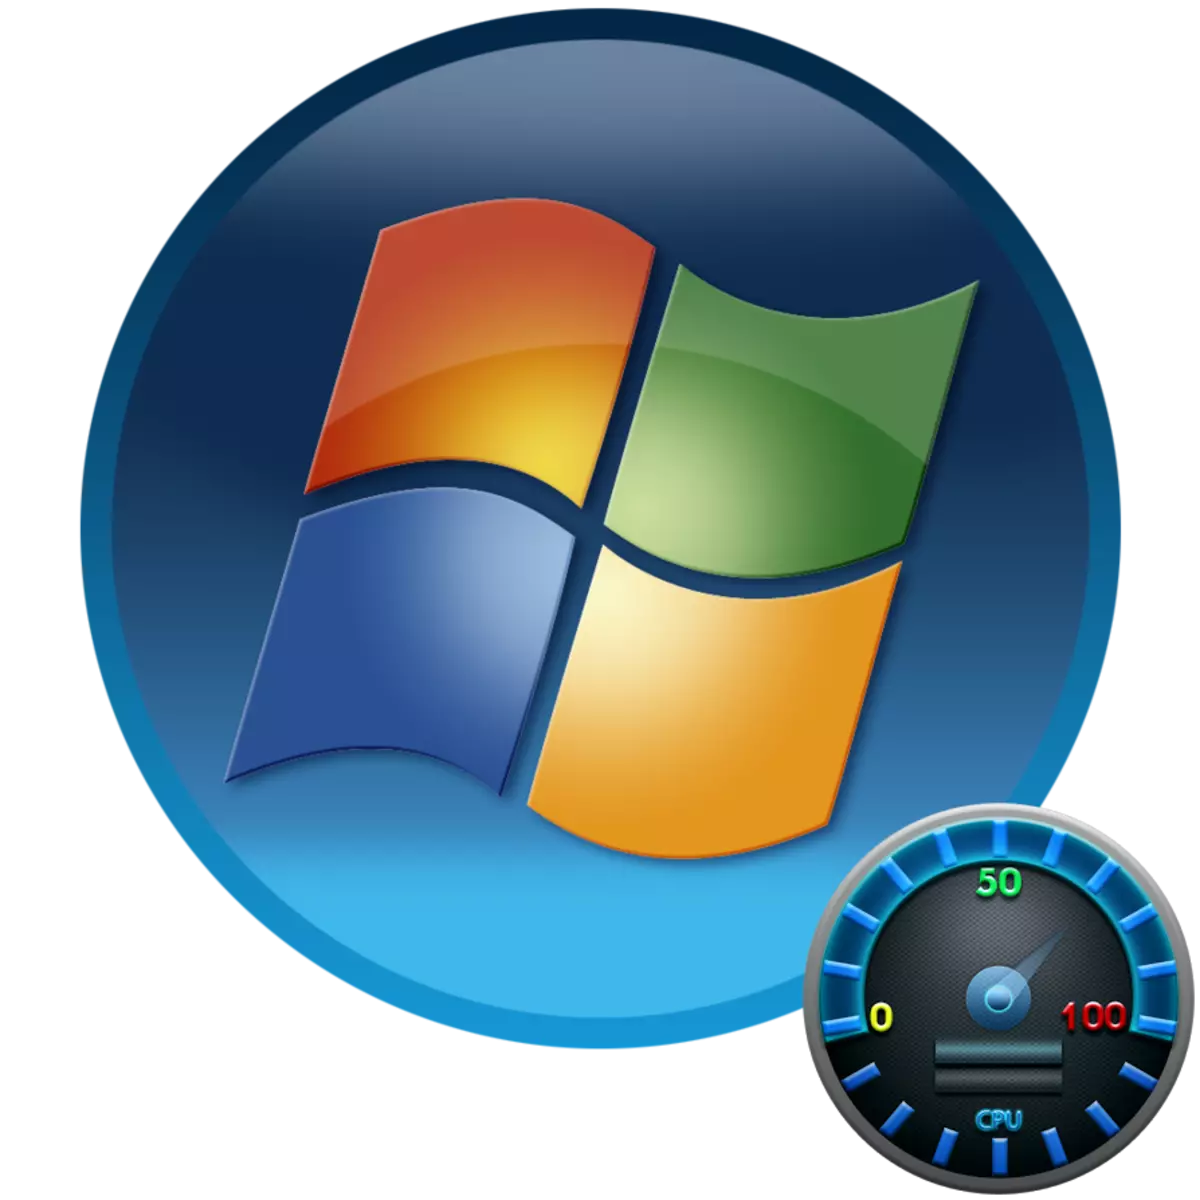 Windows 7 uchun protsessor harorati